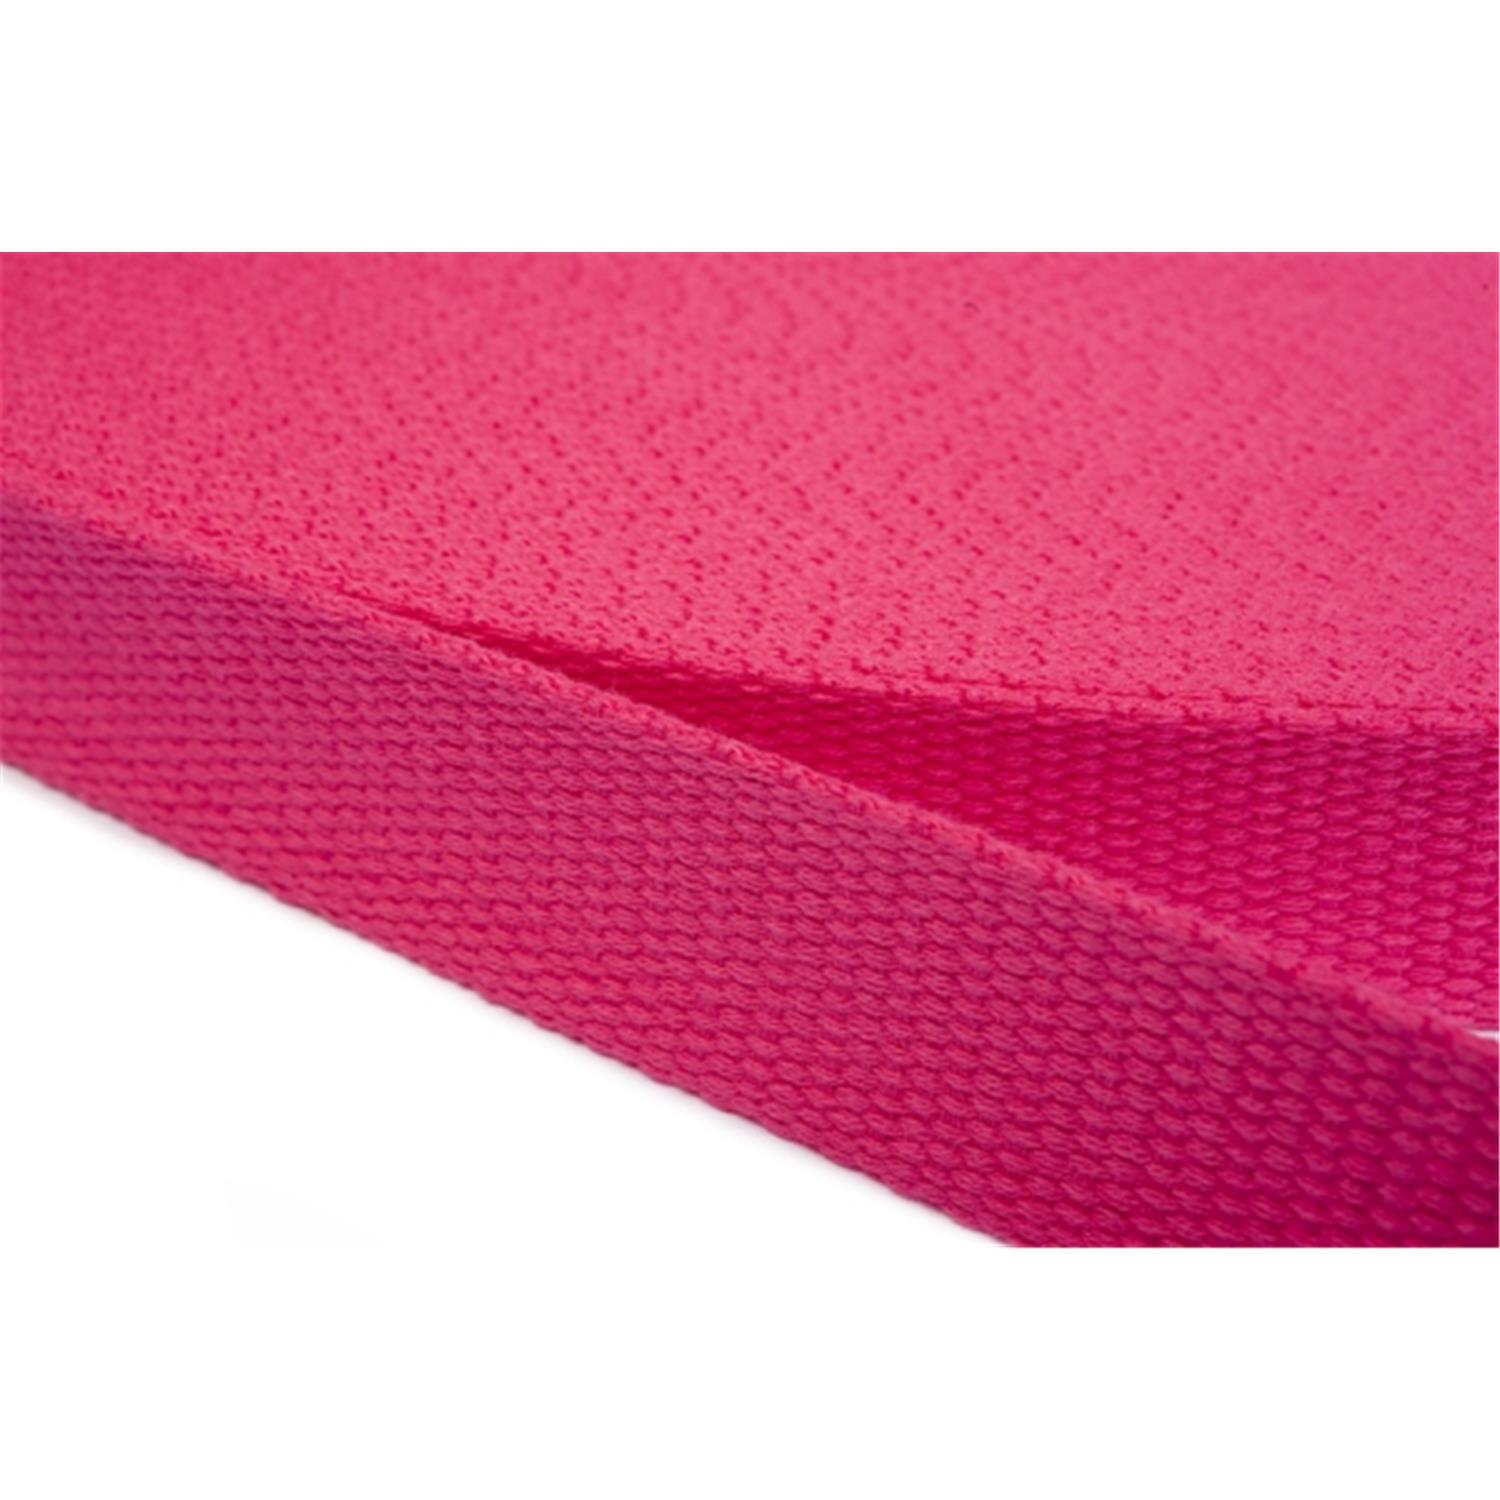 Gurtband aus Baumwolle 50mm in 20 Farben 07 - rosa/pink 12 Meter